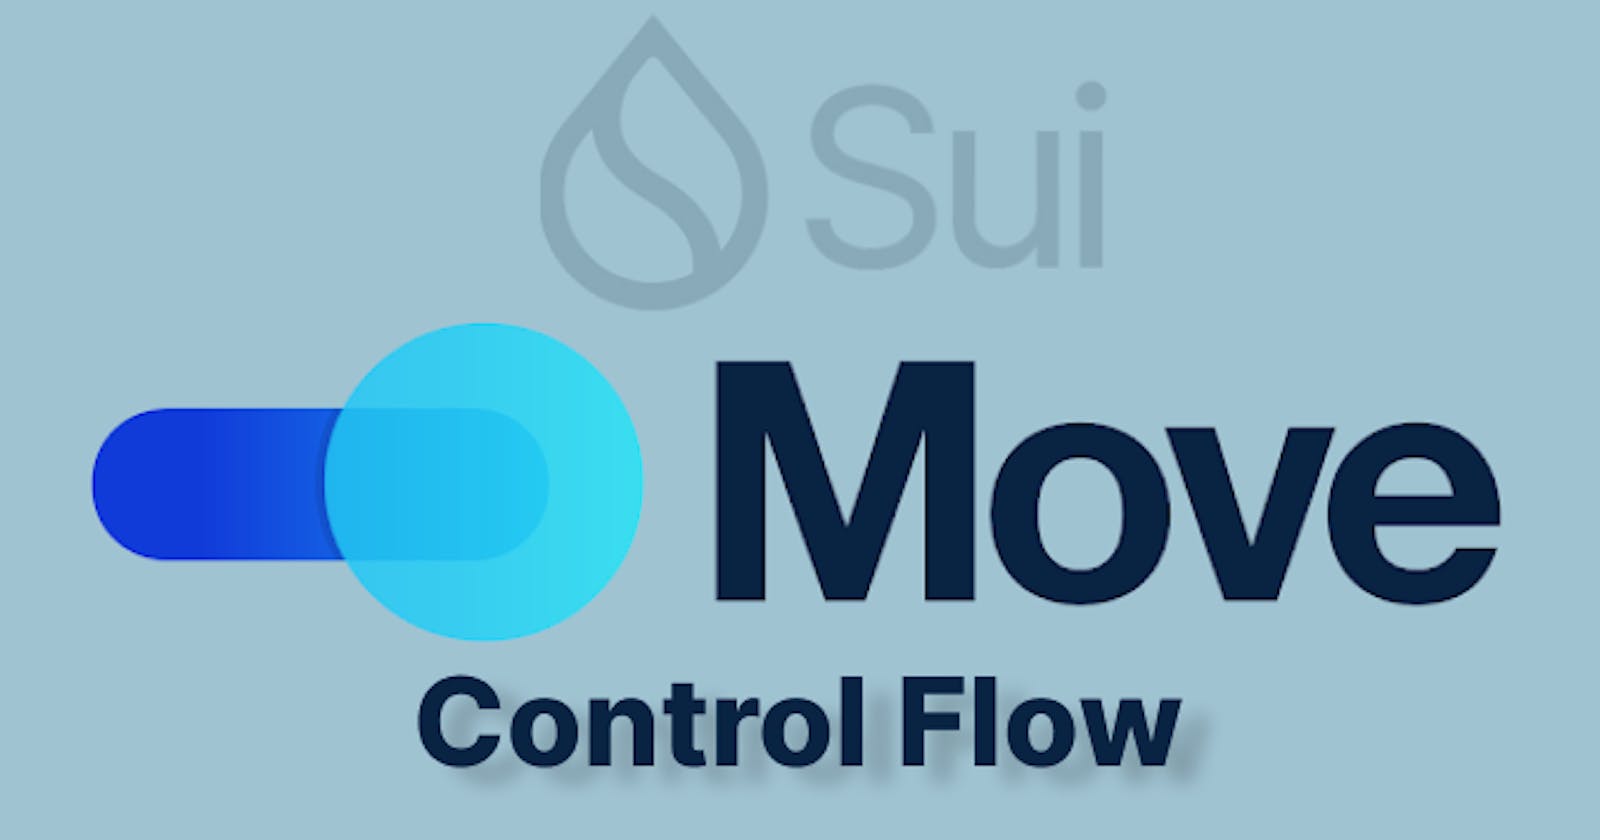 Sui Move Language - Control Flow